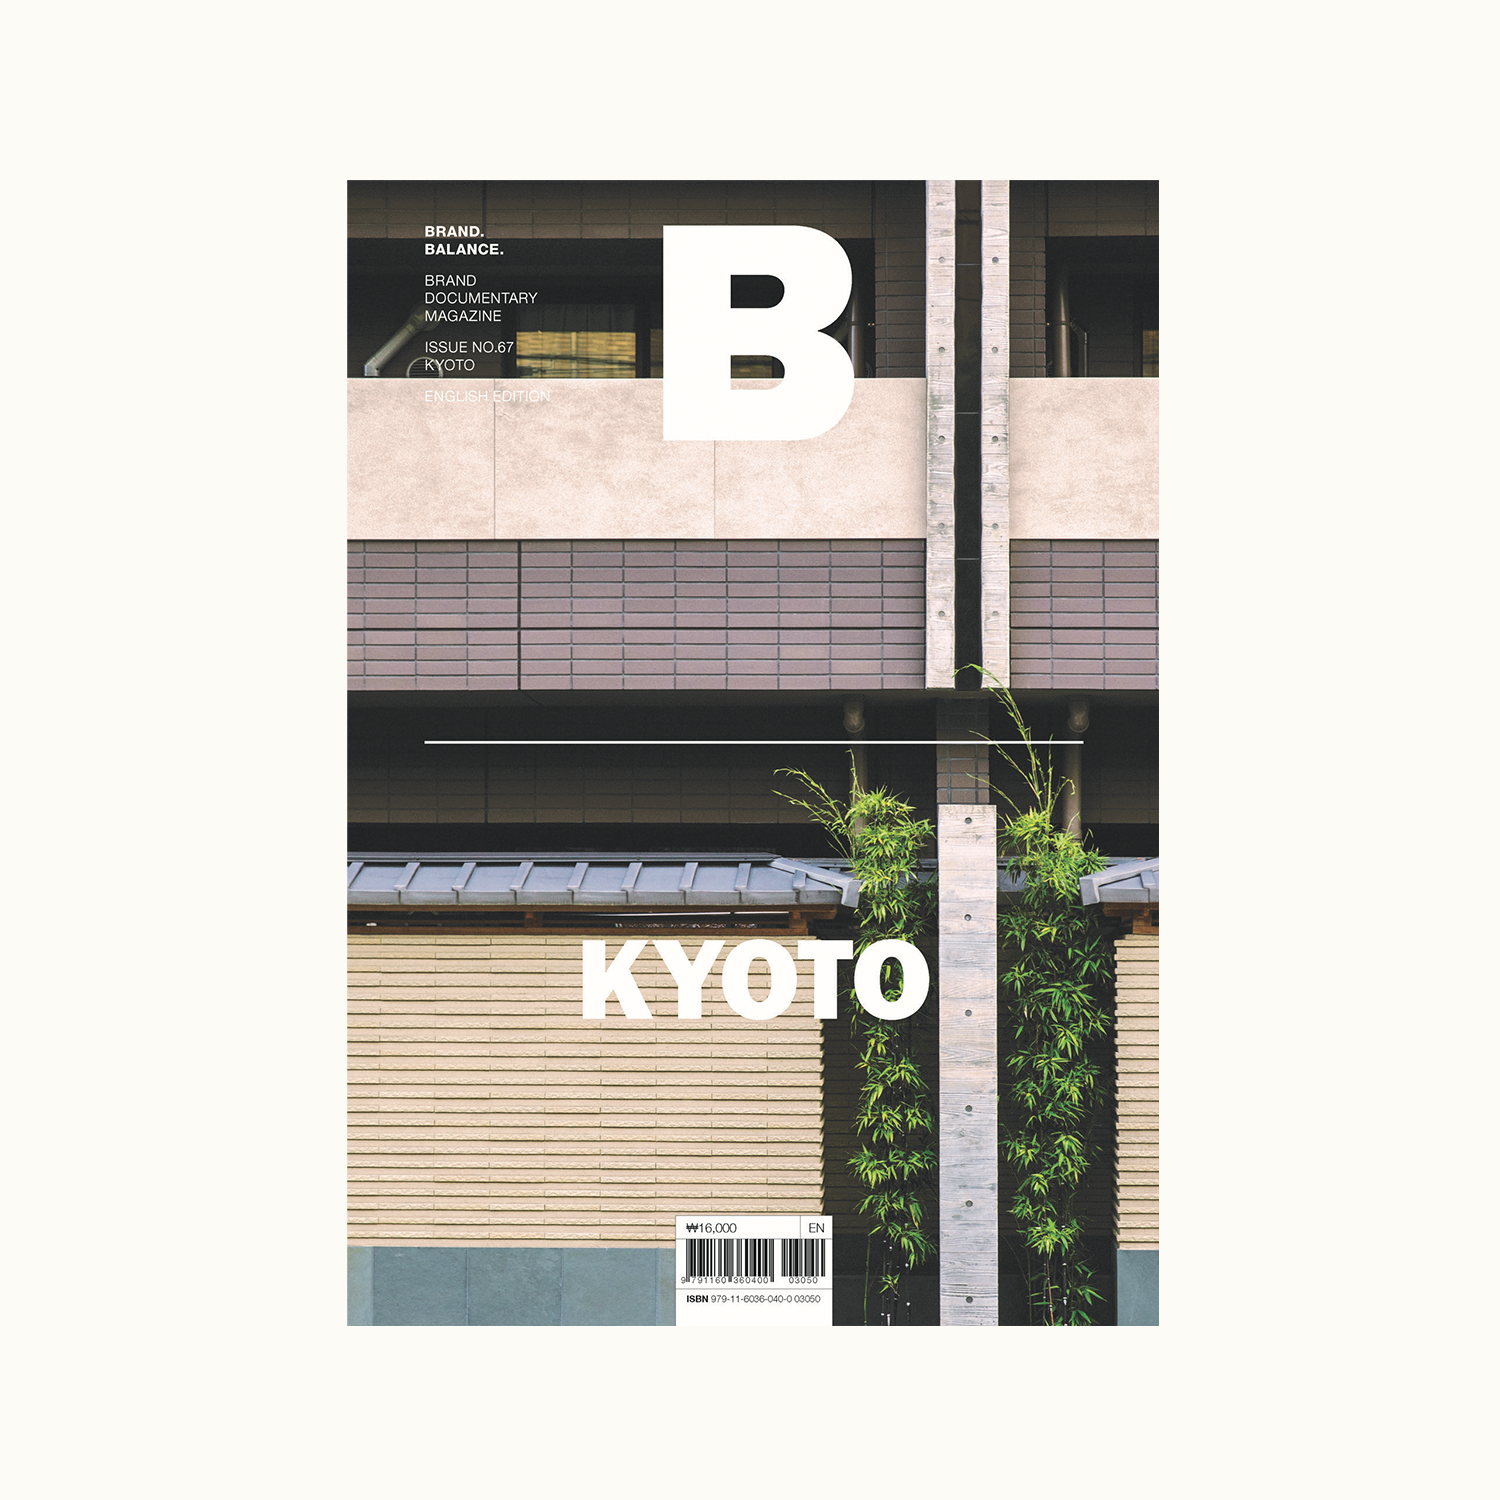 Magazine B consacre se numéro à la ville de Kyoto, son histoire et son développement à travers le temps. 